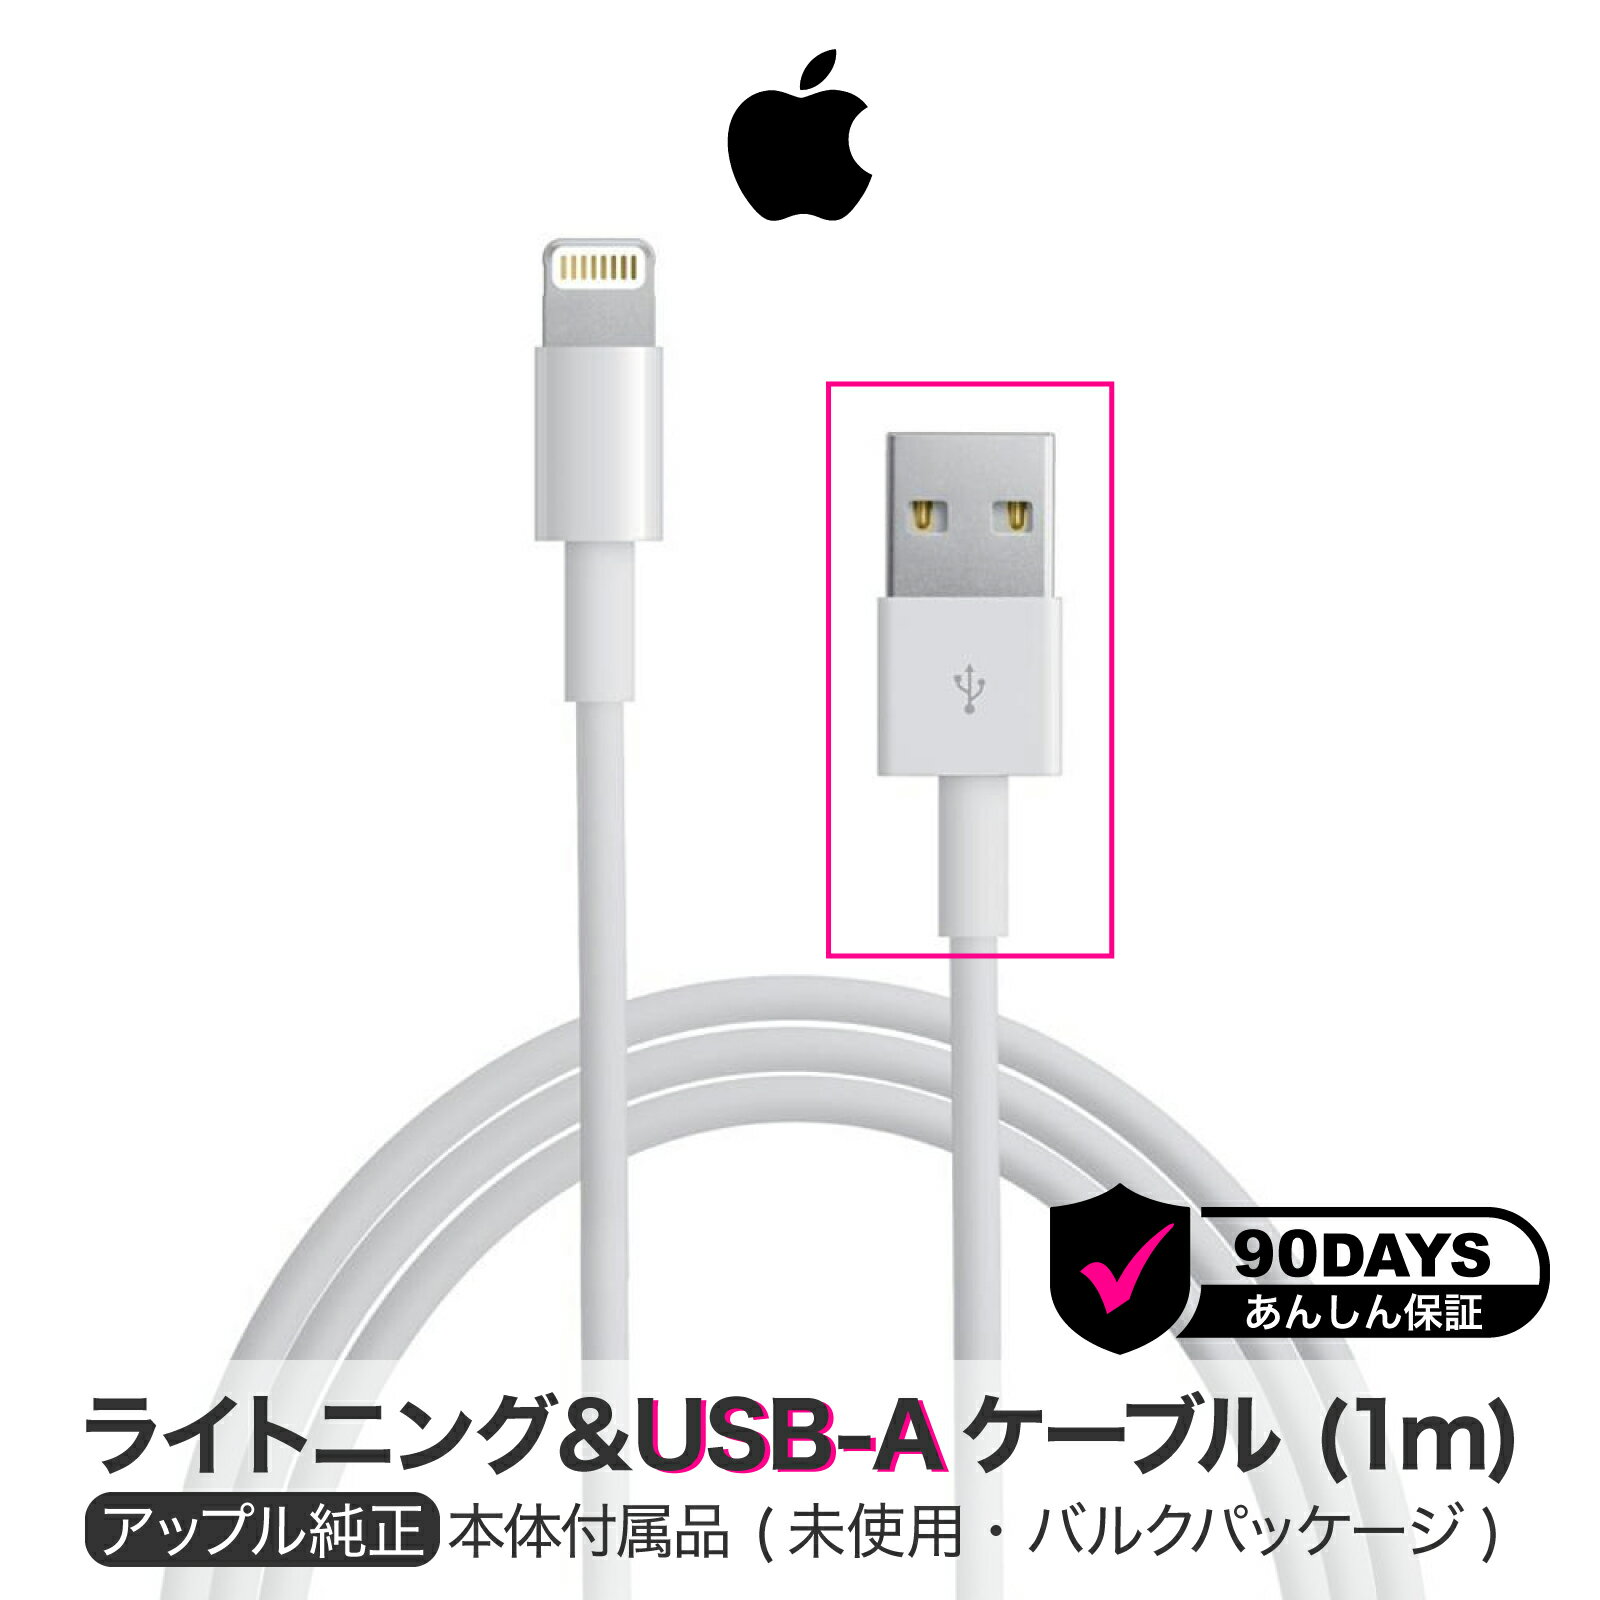 アップル 純正 ライトニングケーブル 1m Apple Lightning USB ケーブル 純正品 iPhone iPad 充電 充電器 アイフォン | 充電ケーブル Apple純正 充電コード iphone iphone充電器純正品 USBケー…